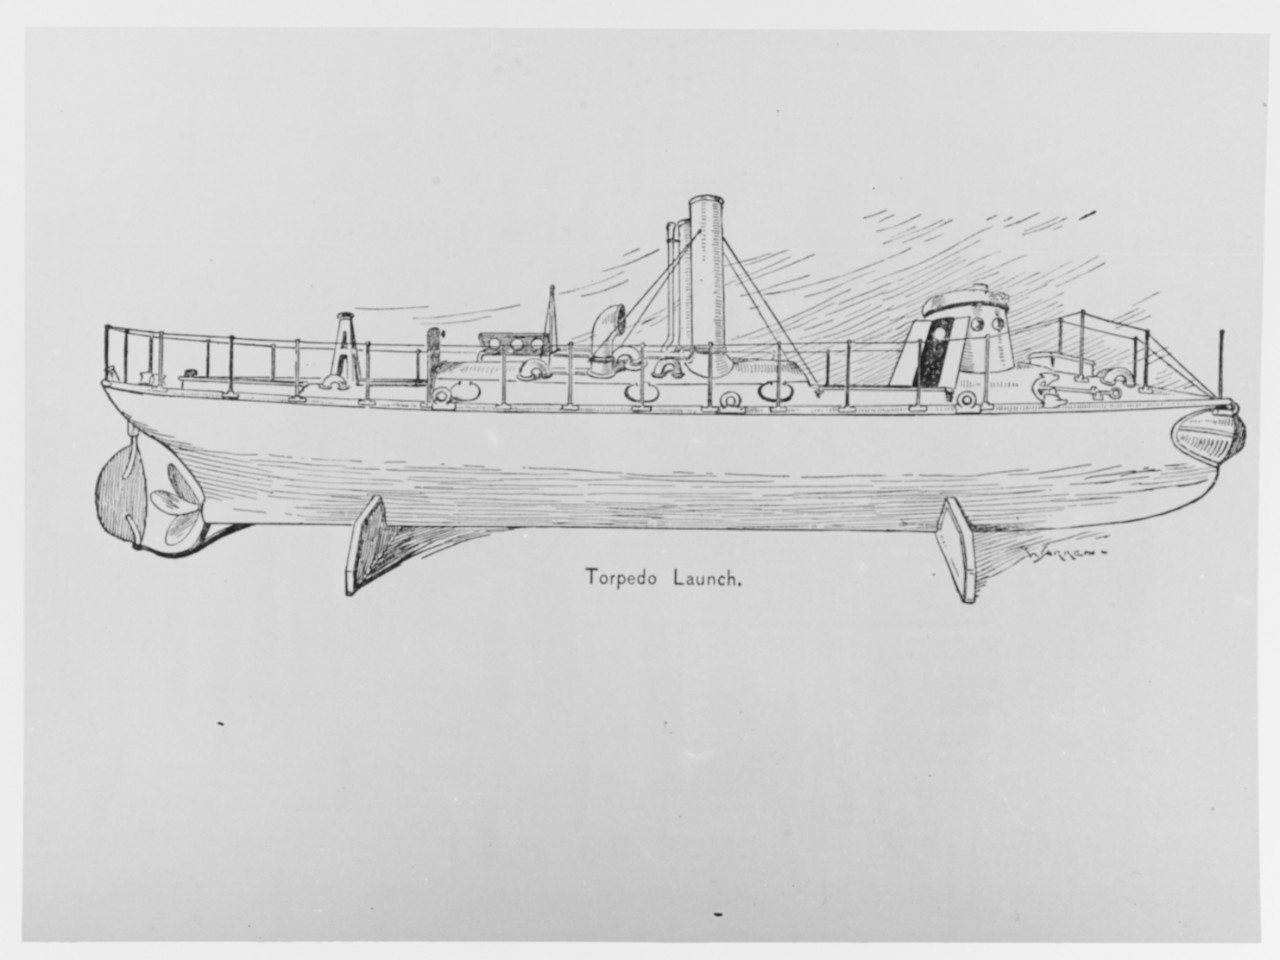 Torpedo Launch